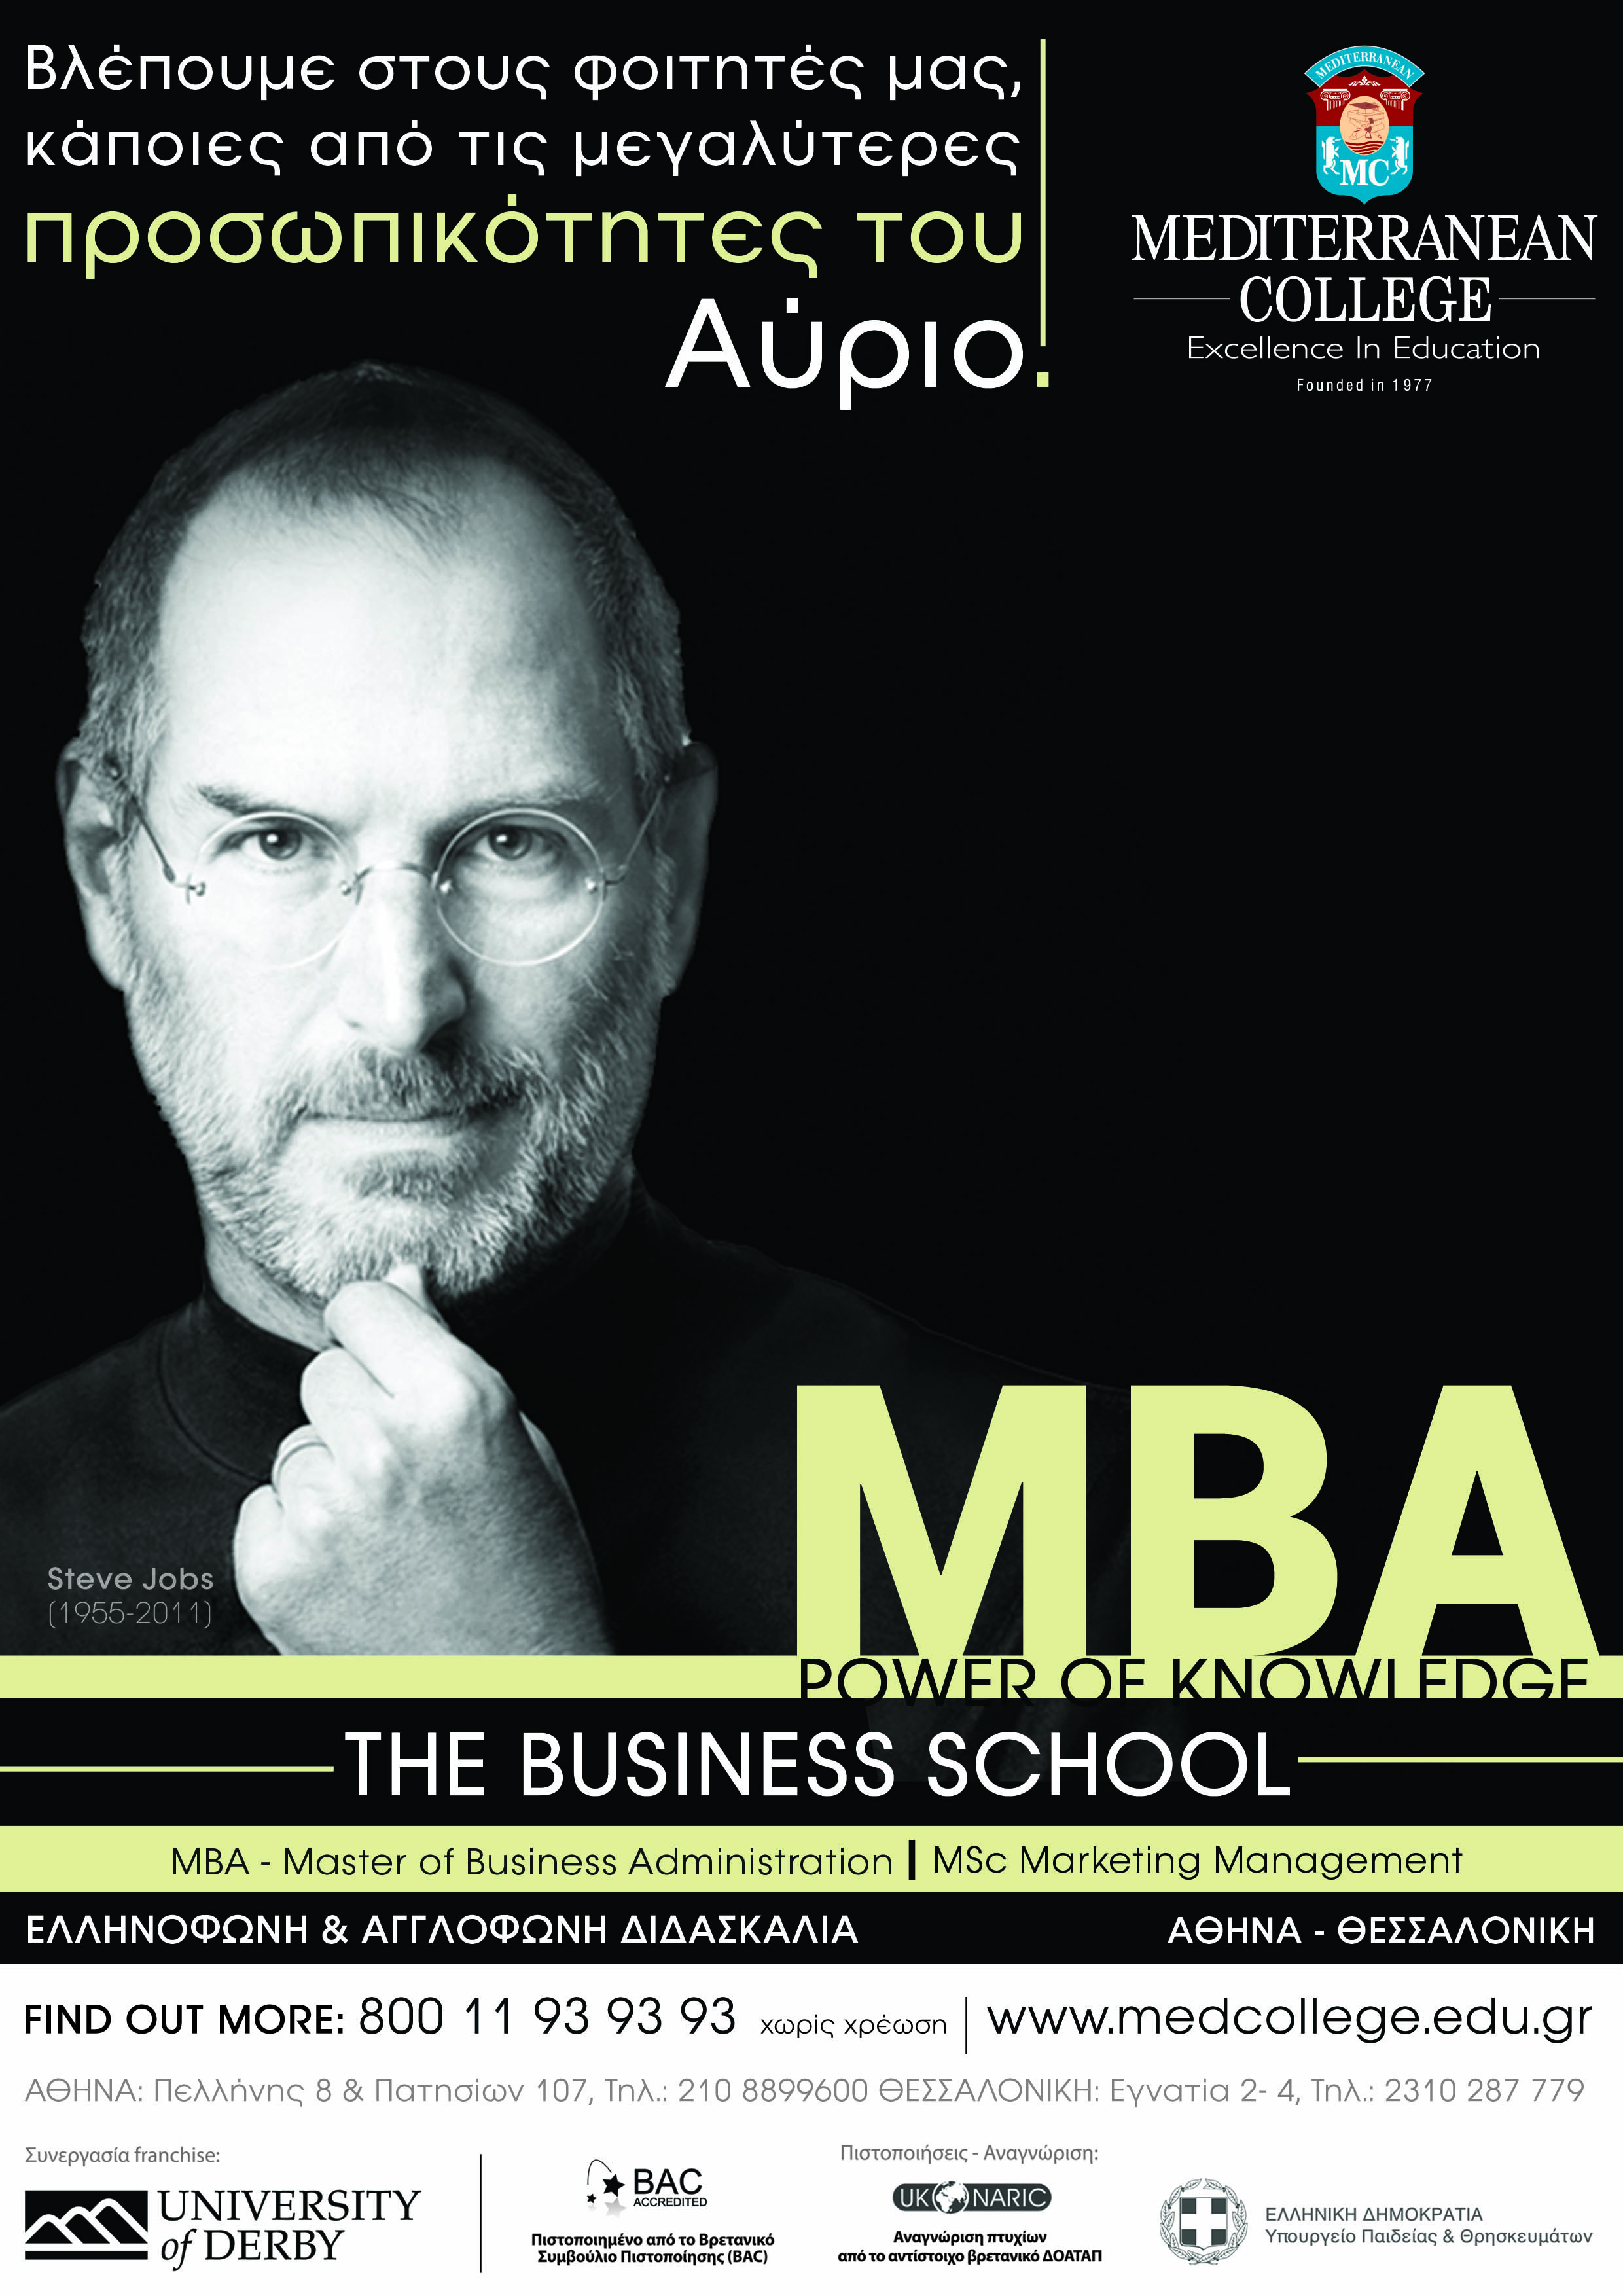 Έχει σημασία να αποκτήσεις το MBA σου από τον πρώτο! Απόκτησε ΜΒΑ στο Mediterranean College